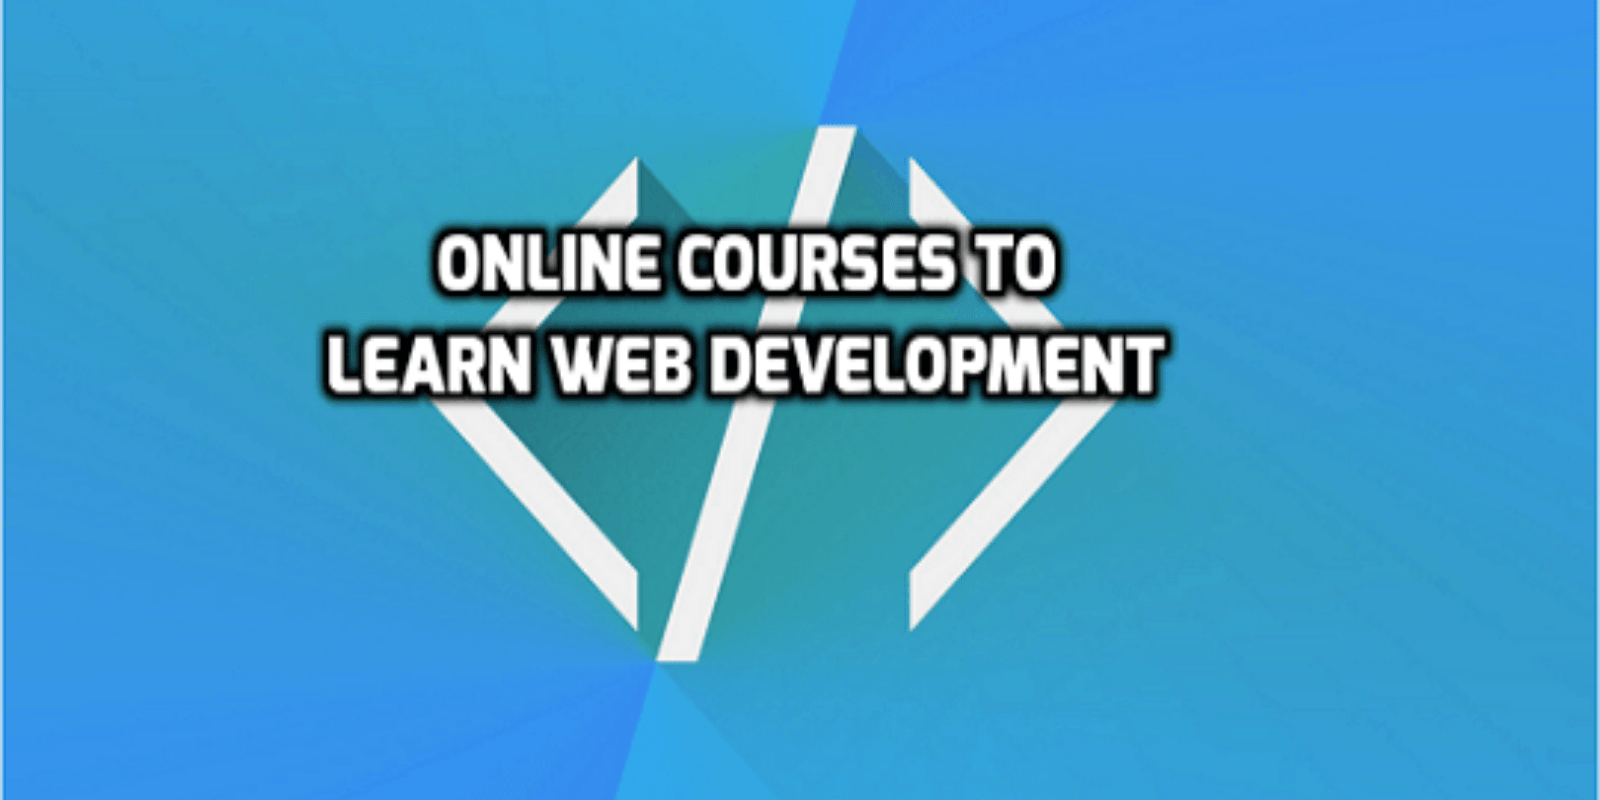 Top 5 Online Courses